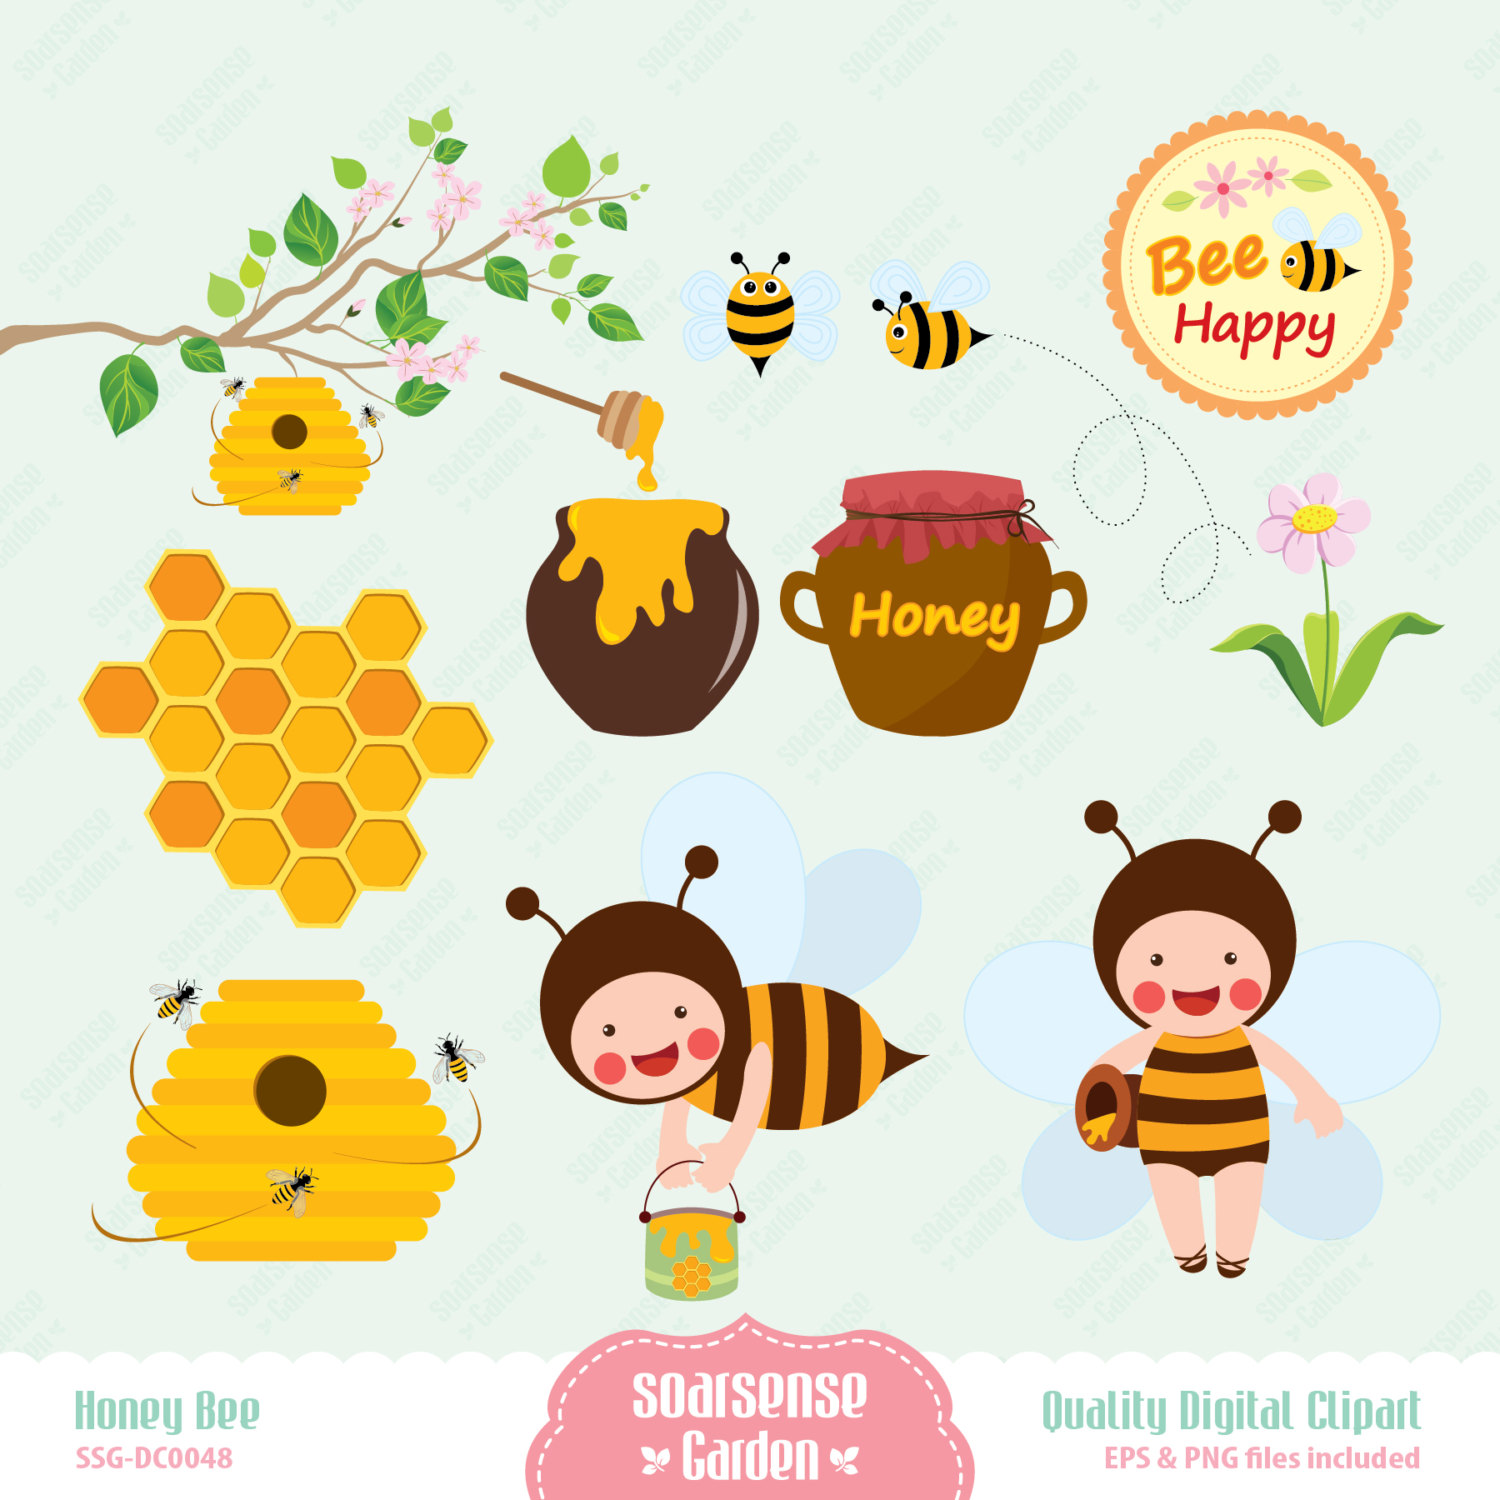 Honey Bee Digital Clipart Bee Hive Honeycomb Honey By Ssgarden